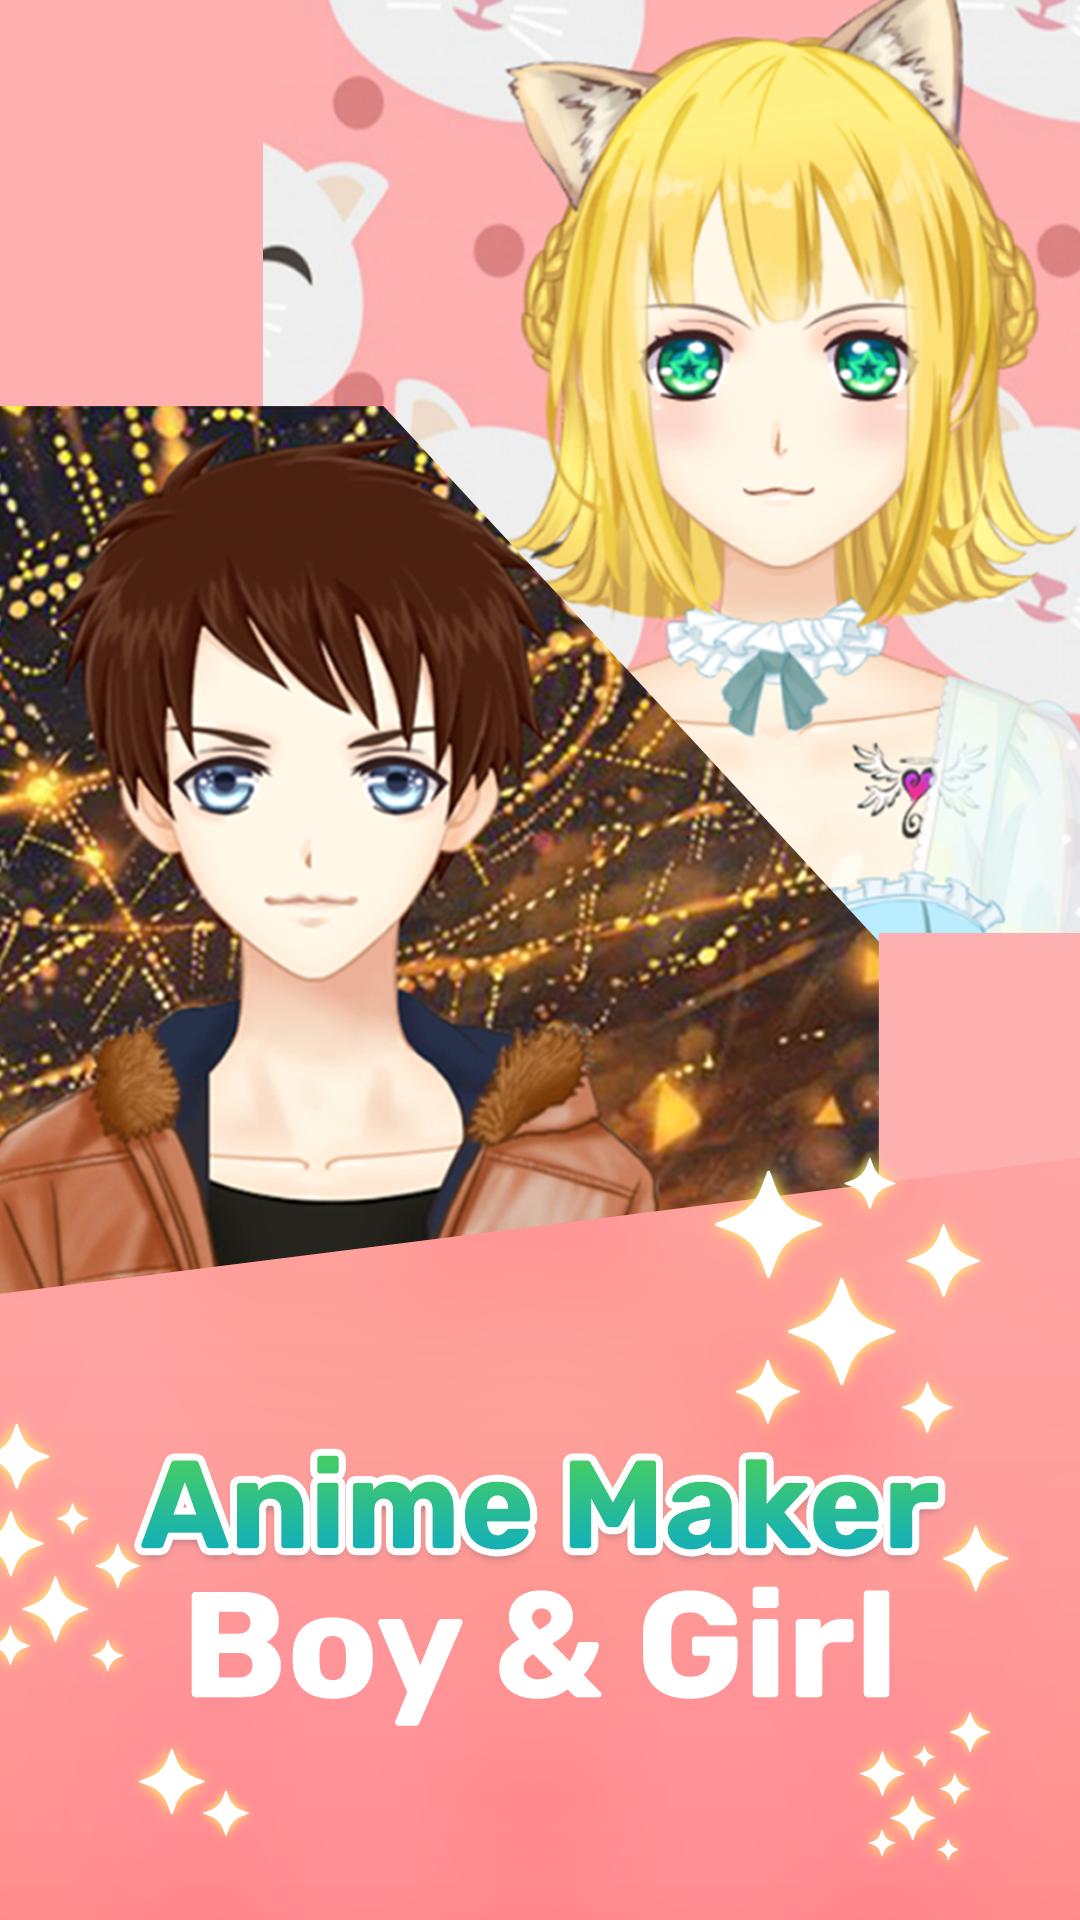 Anime Girl Maker Download